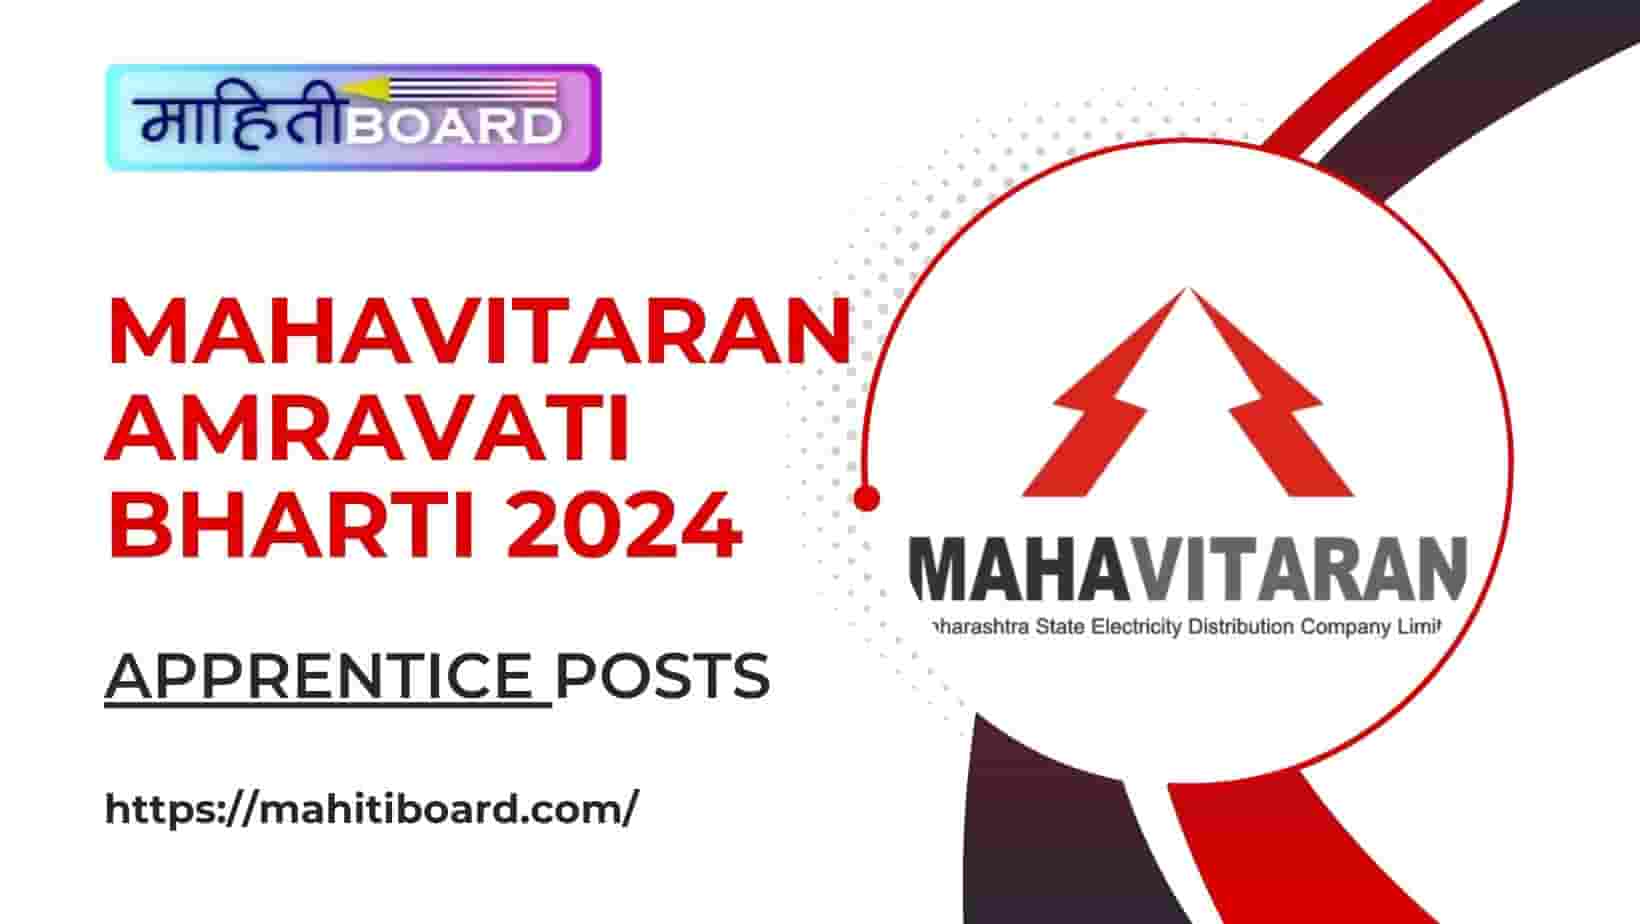 MahaVitaran Amravati Bharti 2024